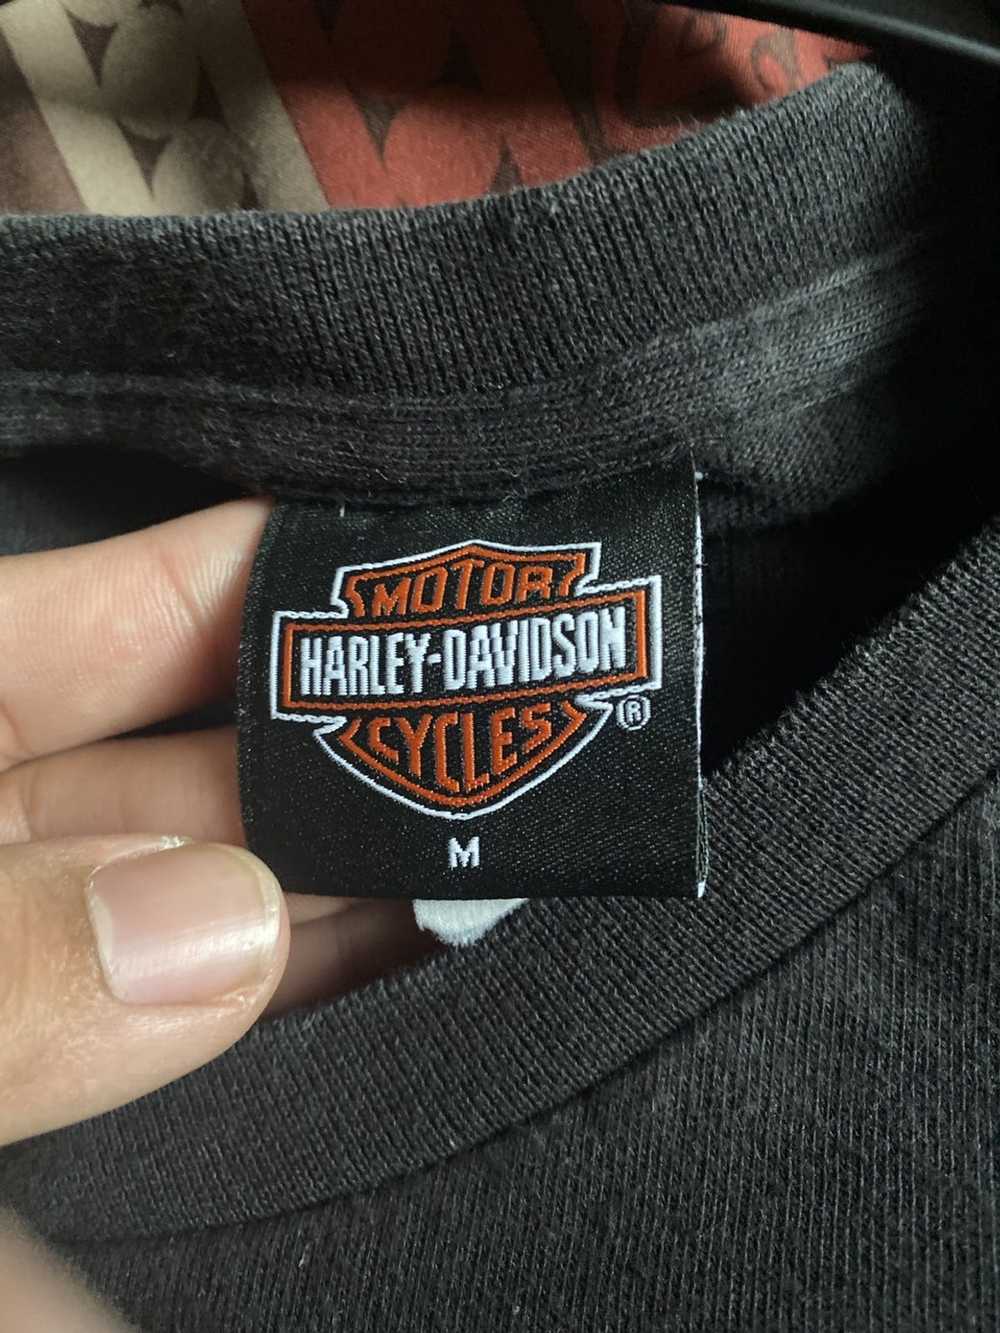 Harley Davidson Longsleeve Harley Davidson t shirt - image 5